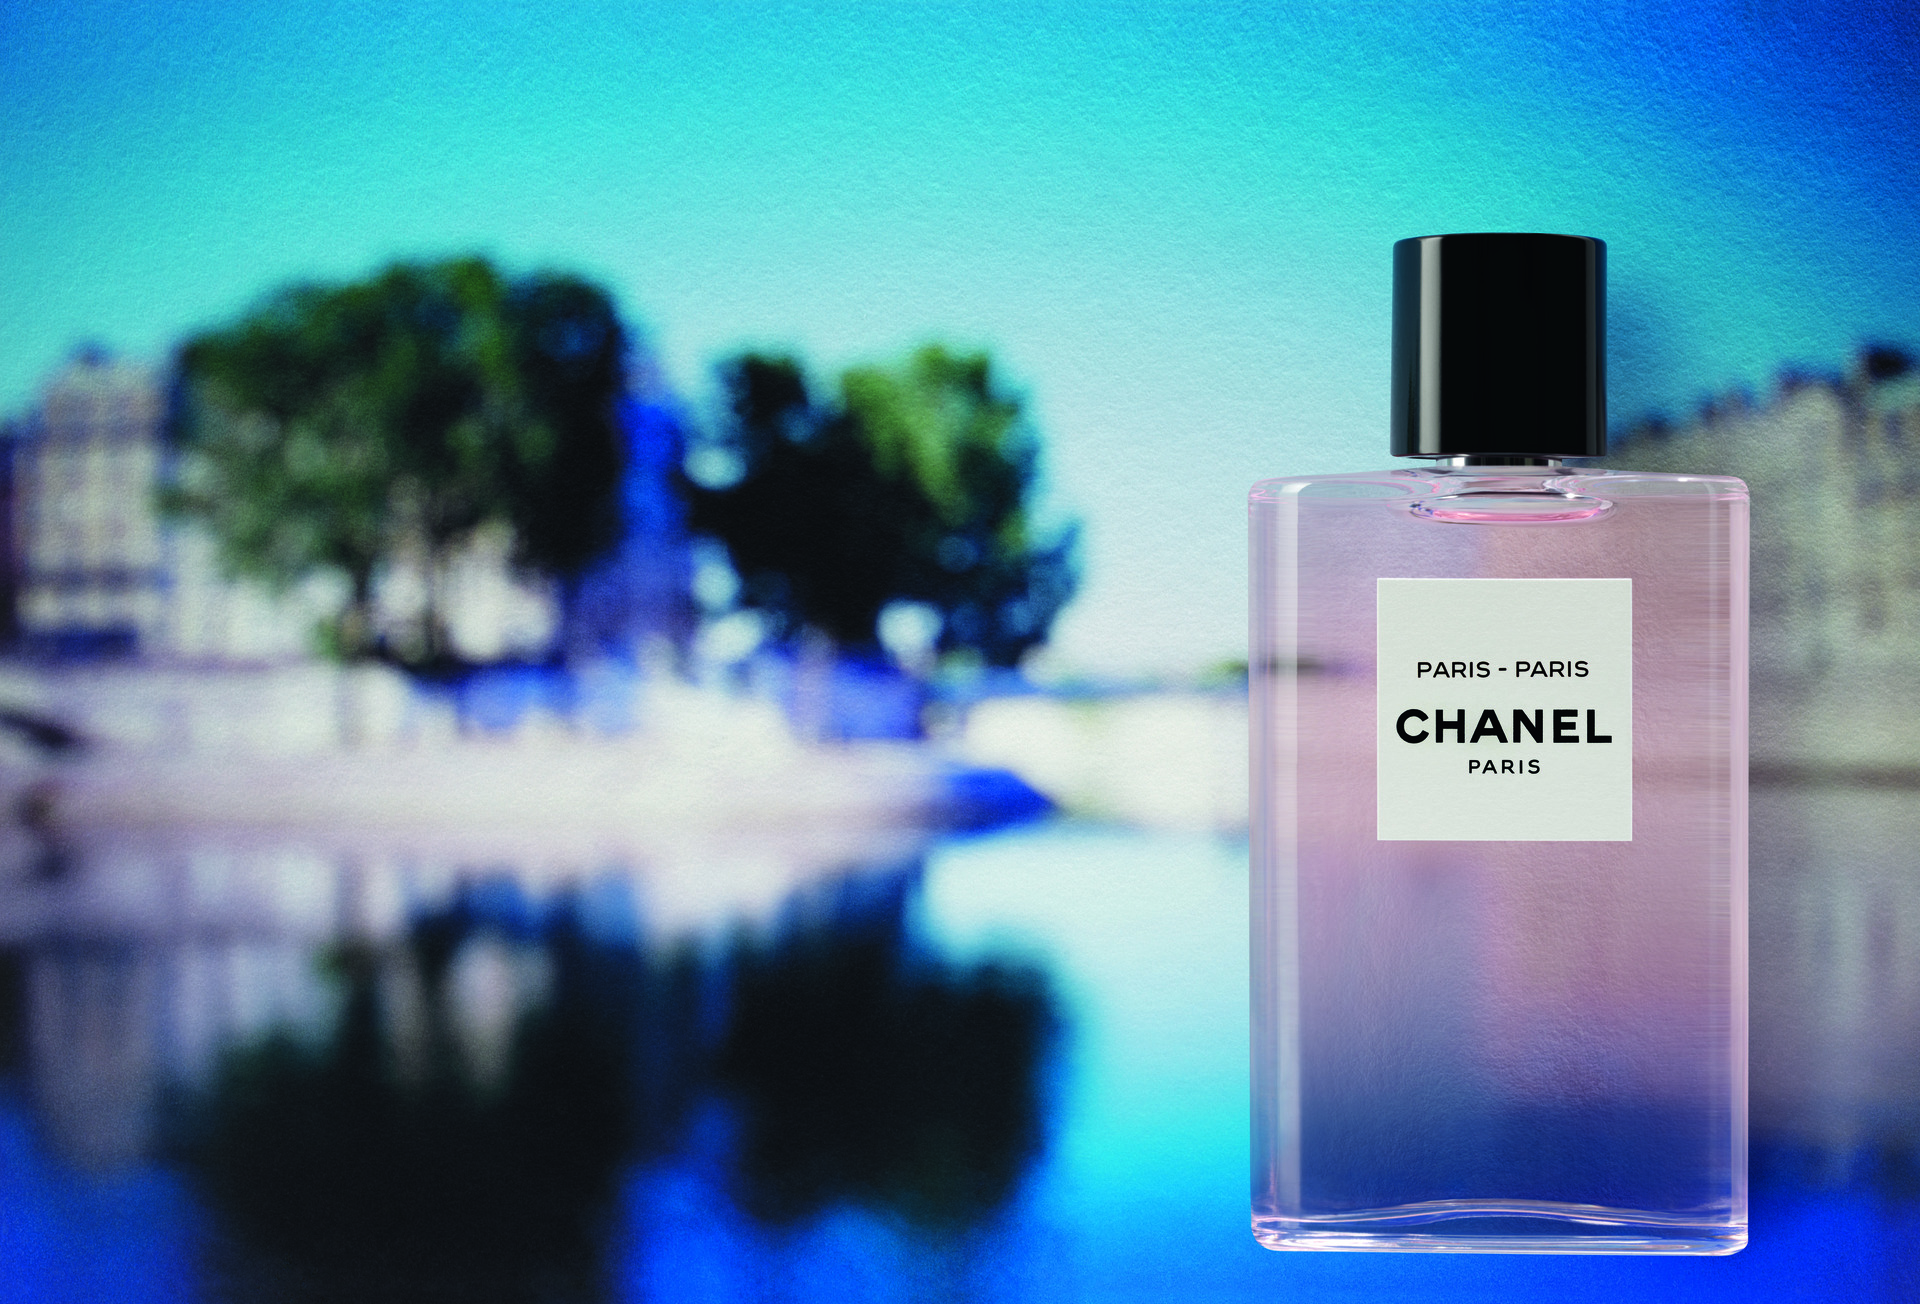 Chanel presenta Les Eaux de Chanel Paris-Paris